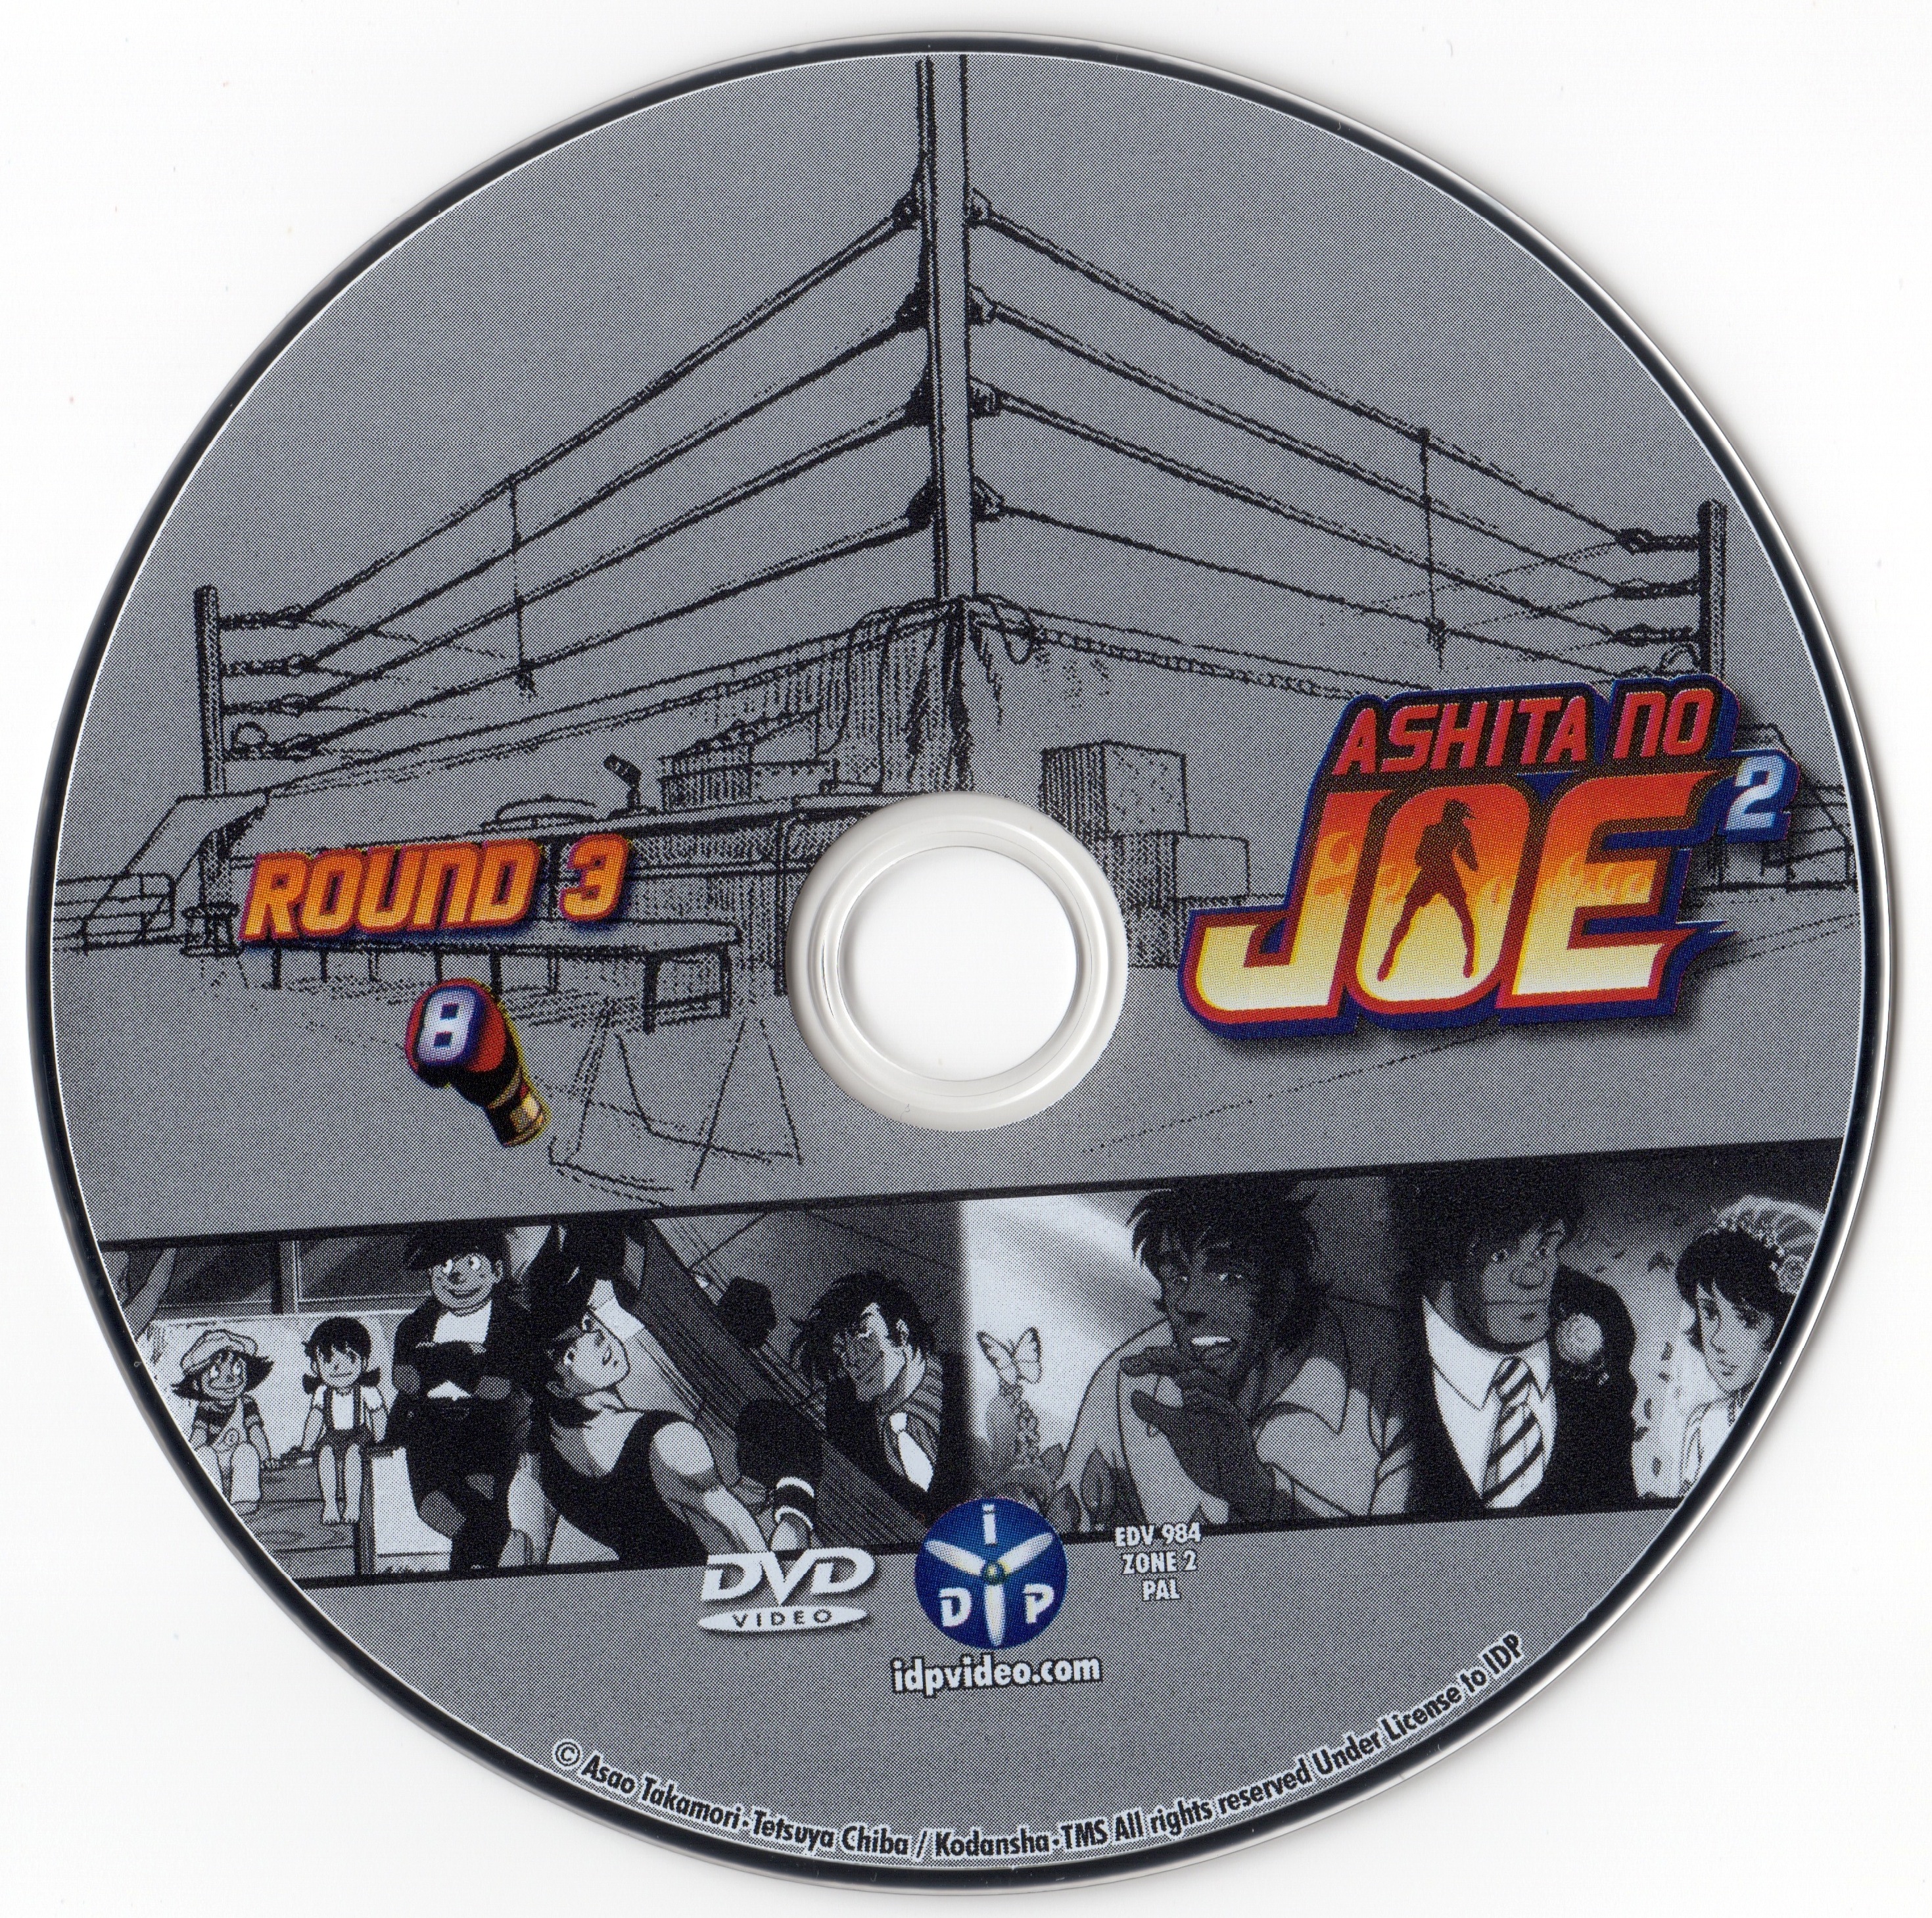 Ashita No Joe 2 Round 1 DVD 8